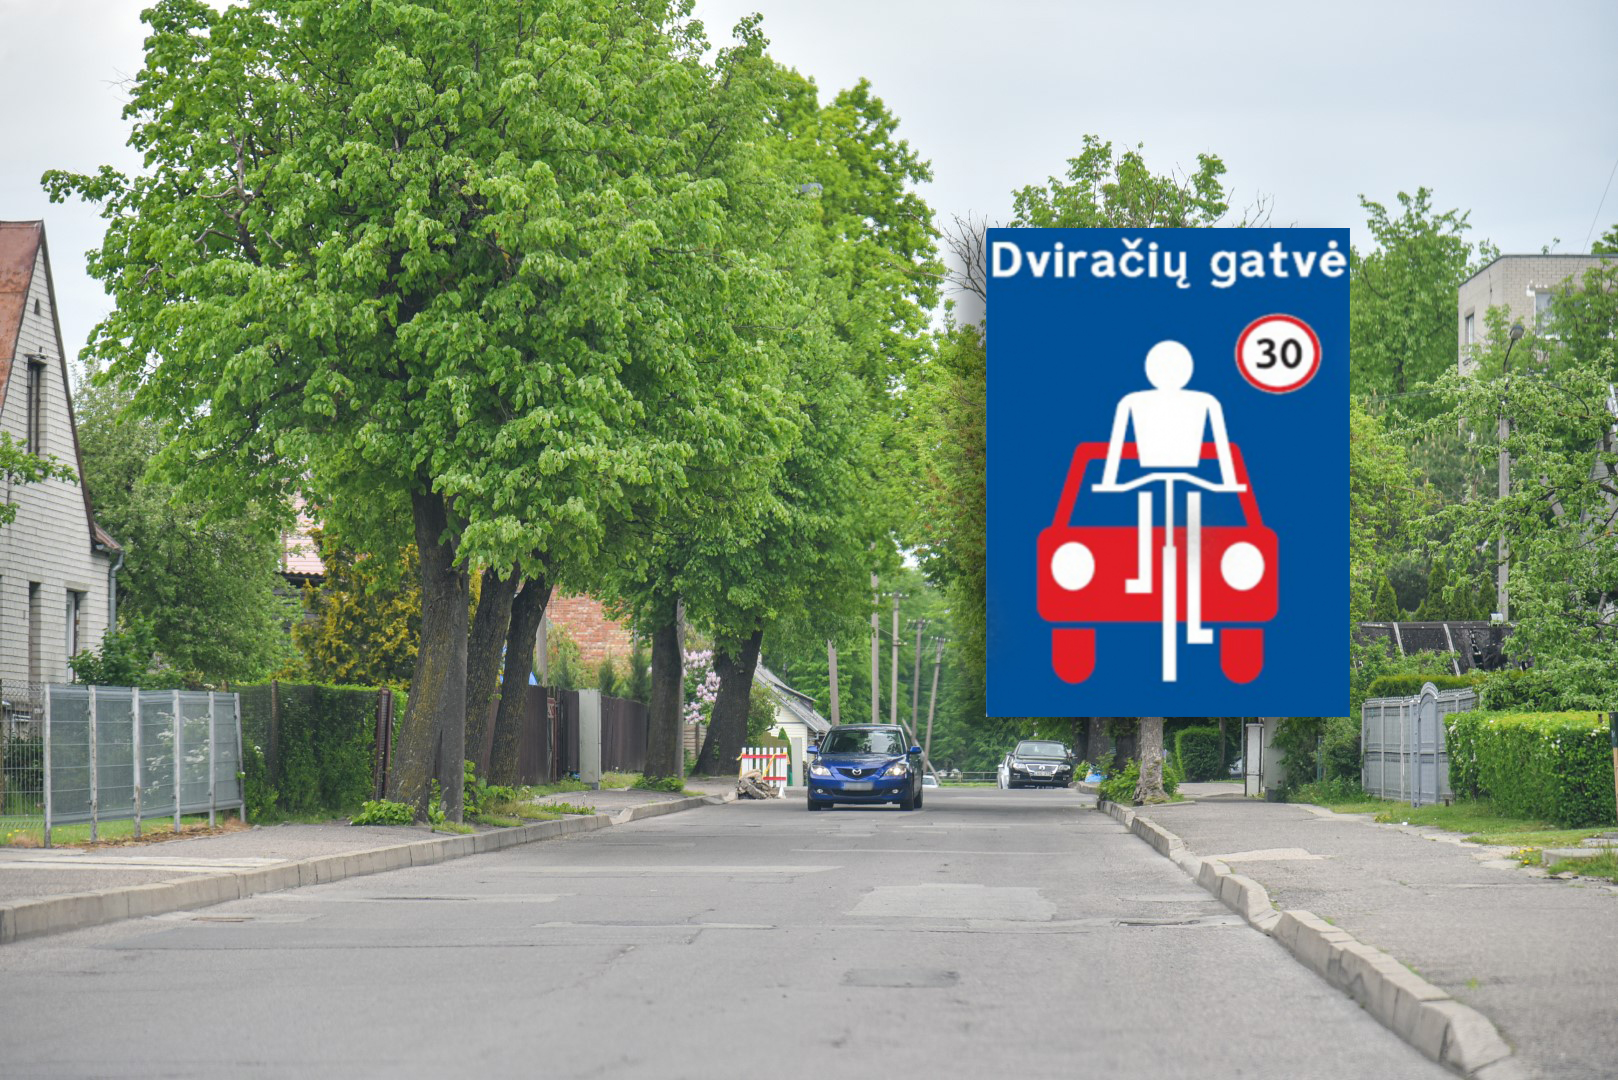 Panevėžyje gali atsirasti dviračių gatvės, kuriose ne didesniu nei 30 kilometrų per valandą greičiu galės važiuoti dviračiai ir automobiliai, nelenkdami vieni kitų.